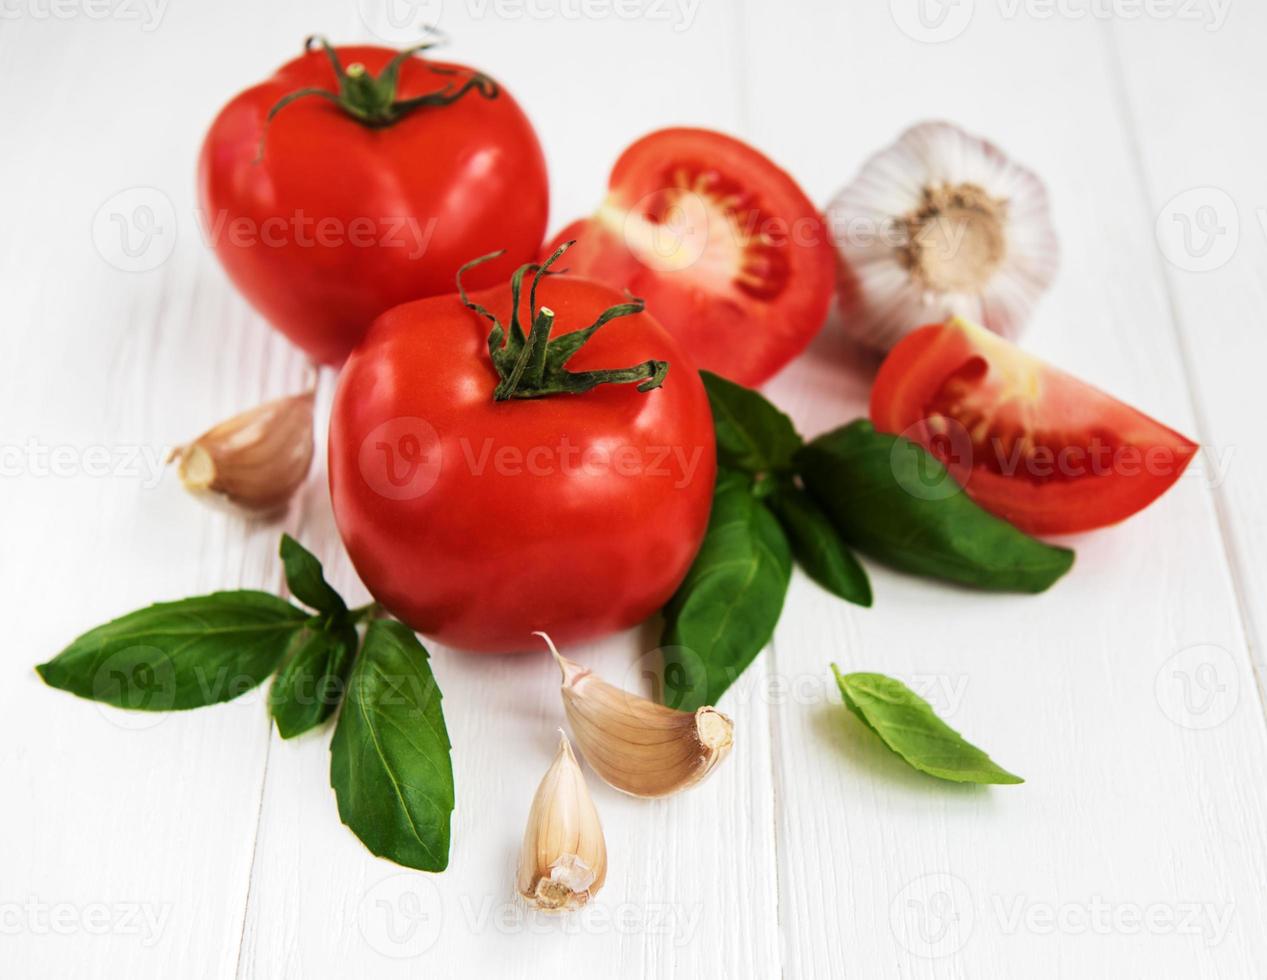 Tomaten und grünes Basilikum foto